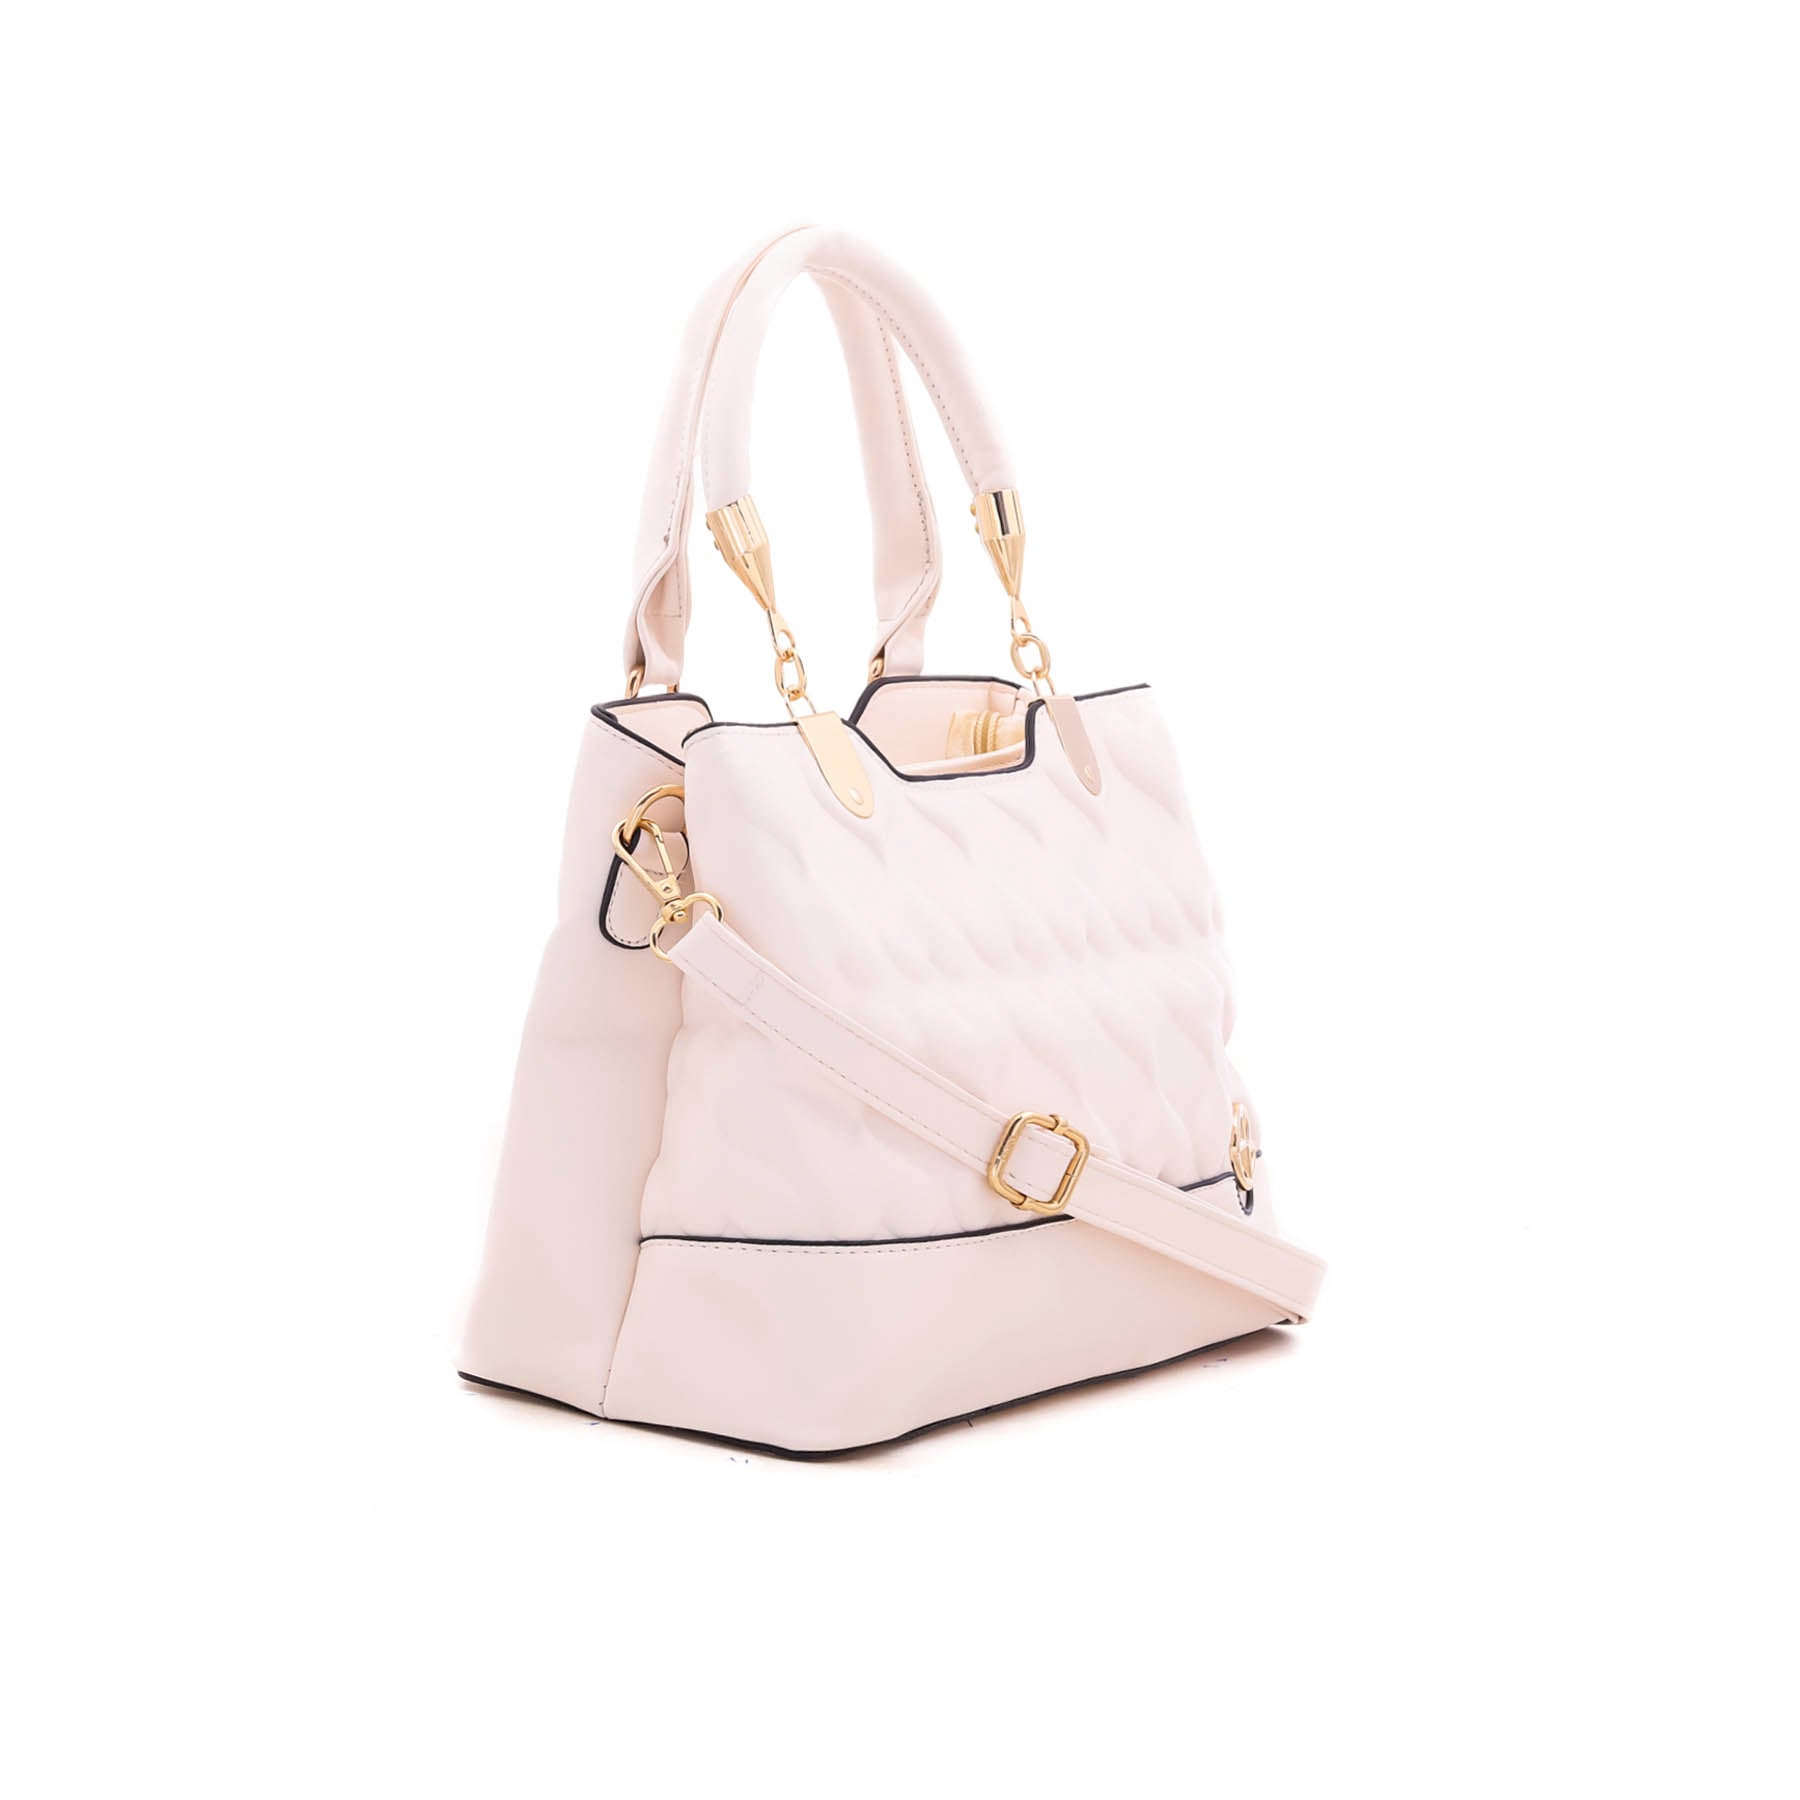 White Formal Hand Bag P35570